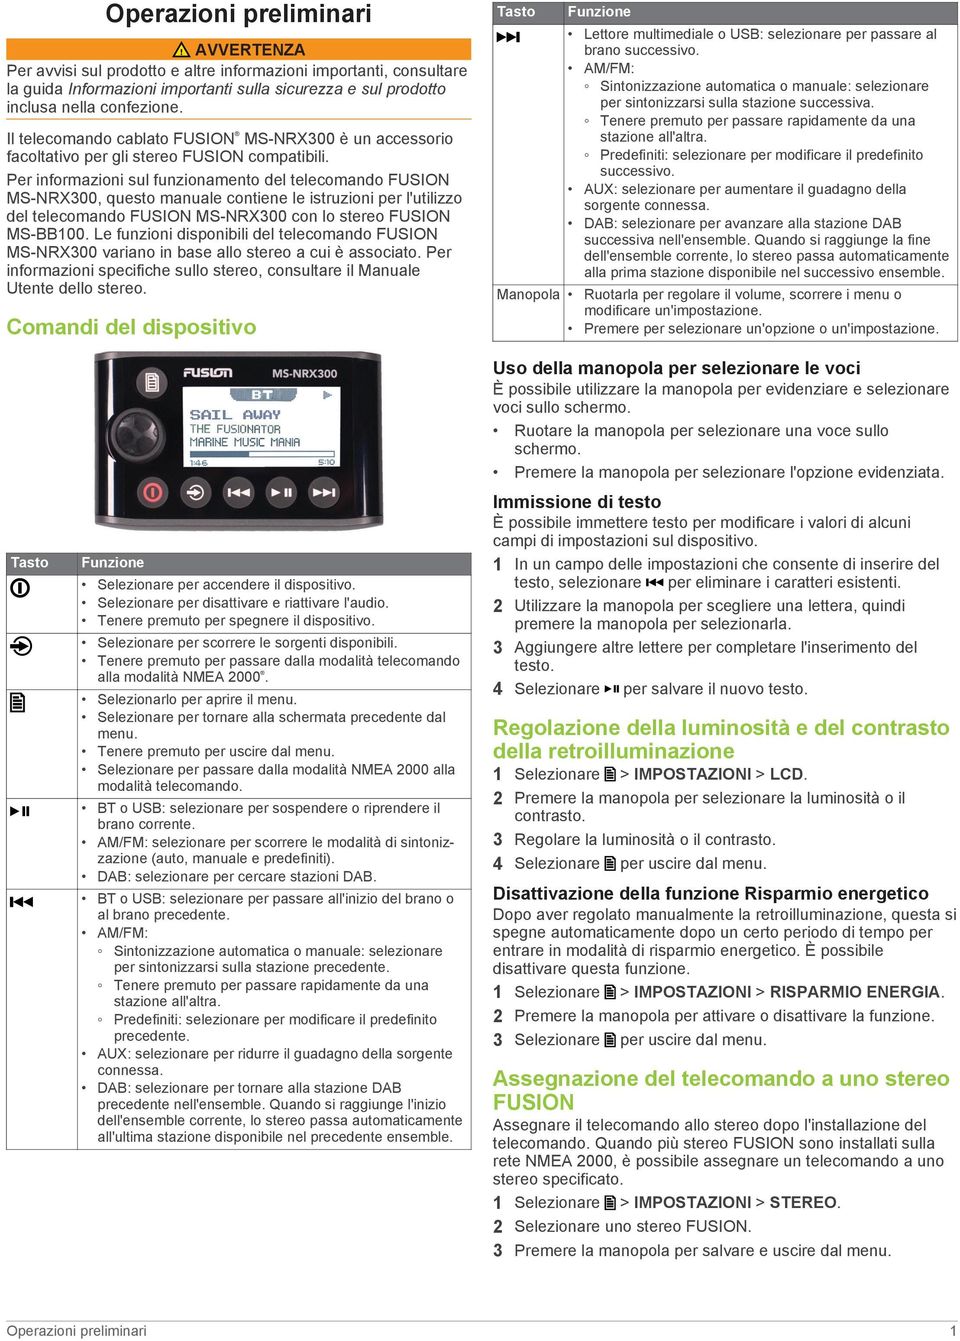 Per informazioni sul funzionamento del telecomando FUSION MS-NRX300, questo manuale contiene le istruzioni per l'utilizzo del telecomando FUSION MS-NRX300 con lo stereo FUSION MS-BB100.